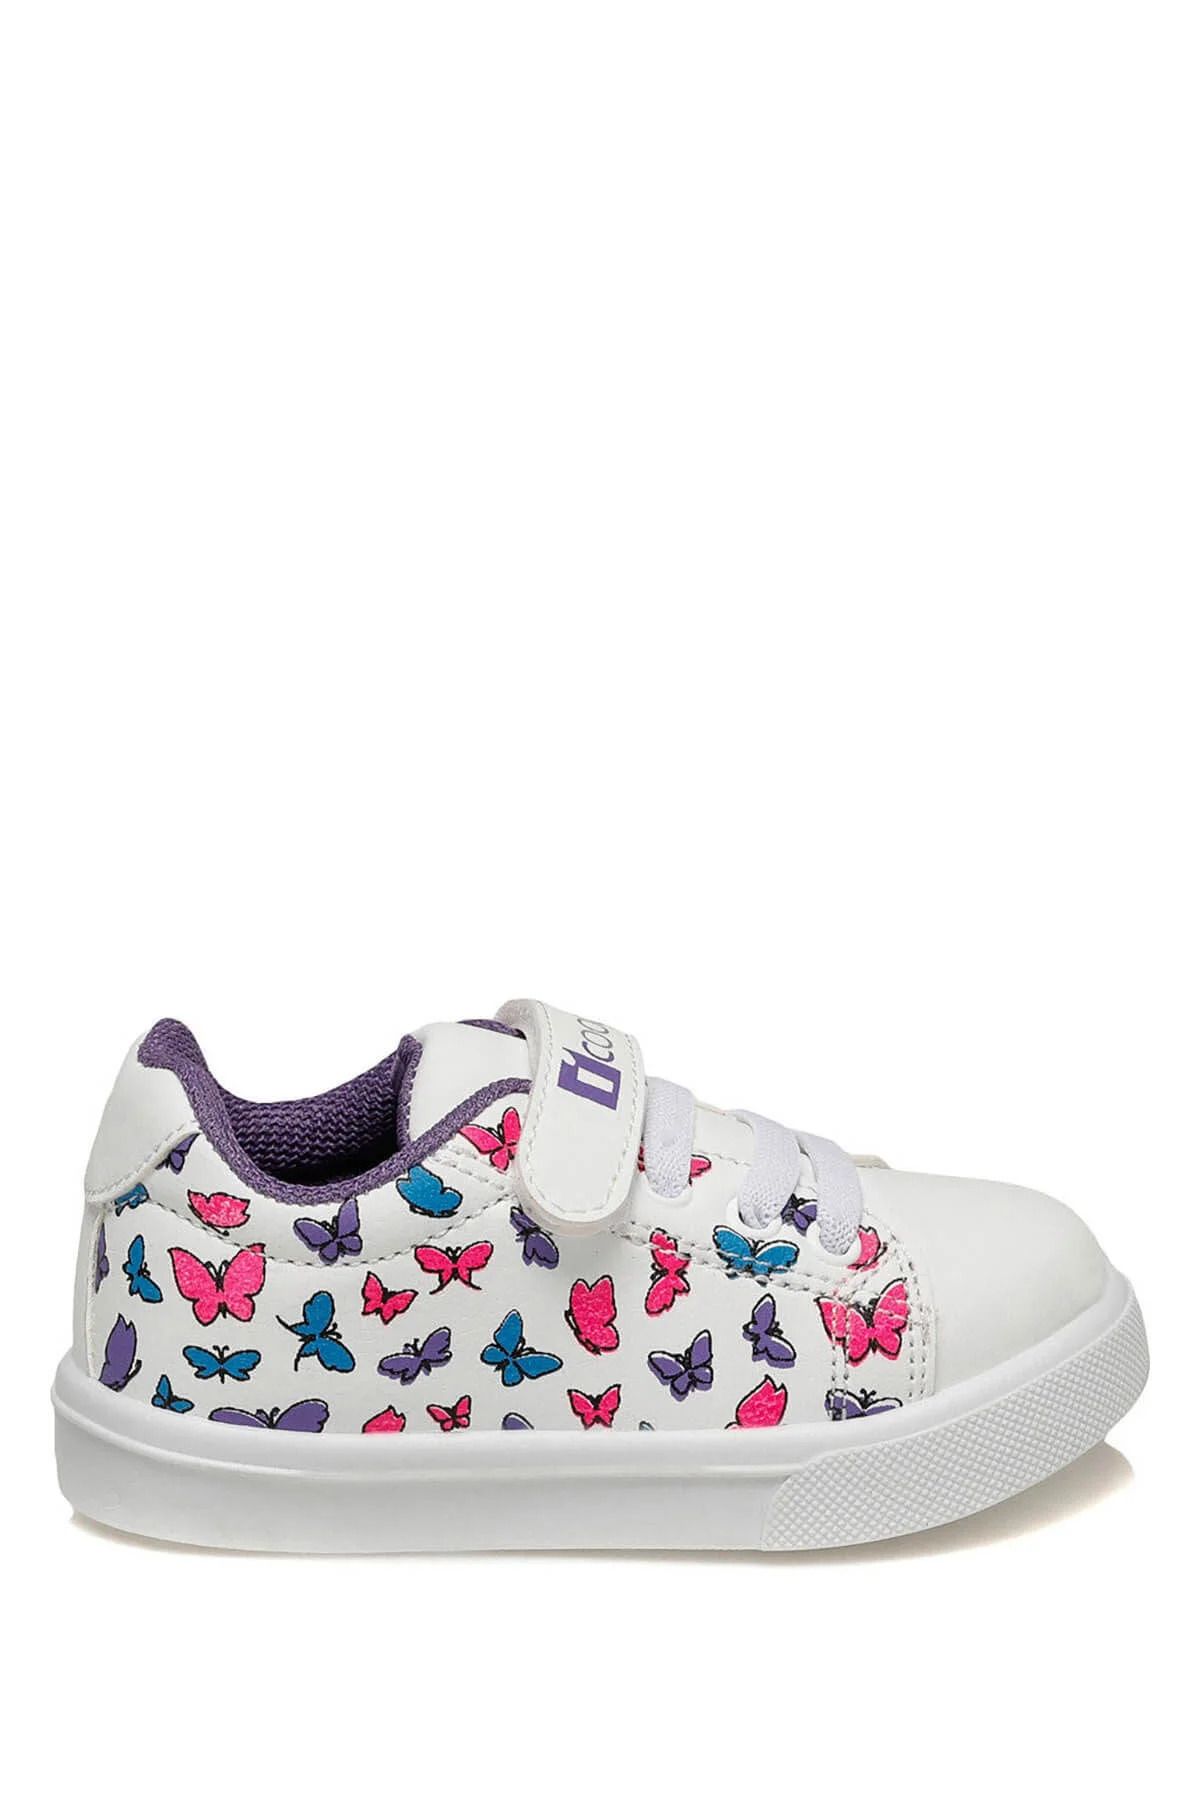 Icool LOVELY Beyaz Kız Çocuk Sneaker Ayakkabı